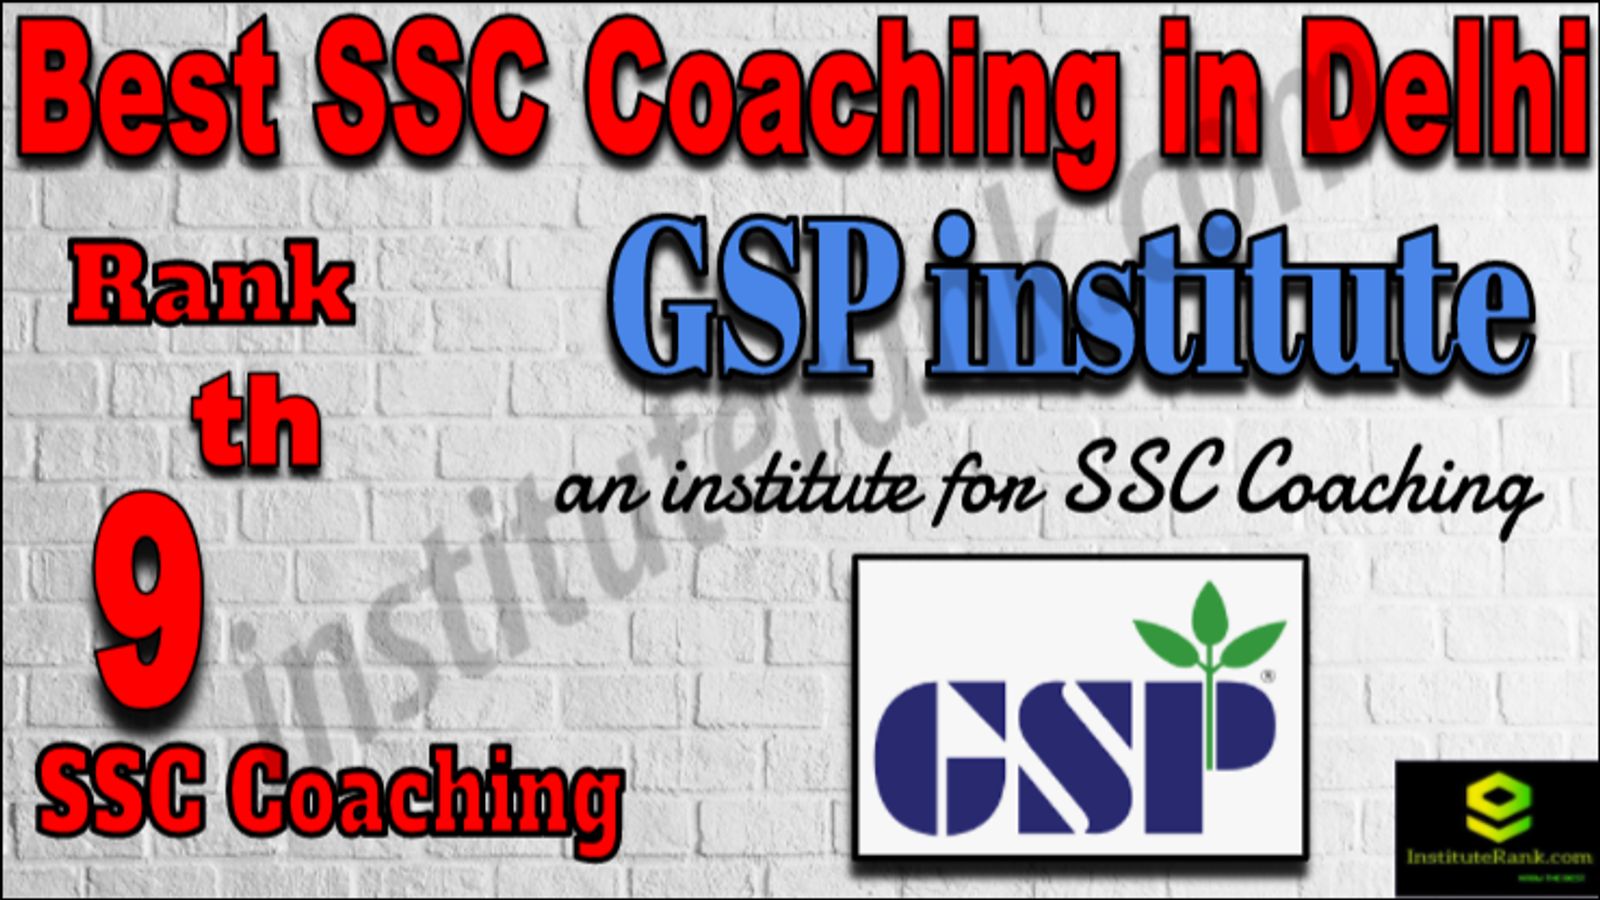 Rank 9 Best SSC Coaching in Delhi